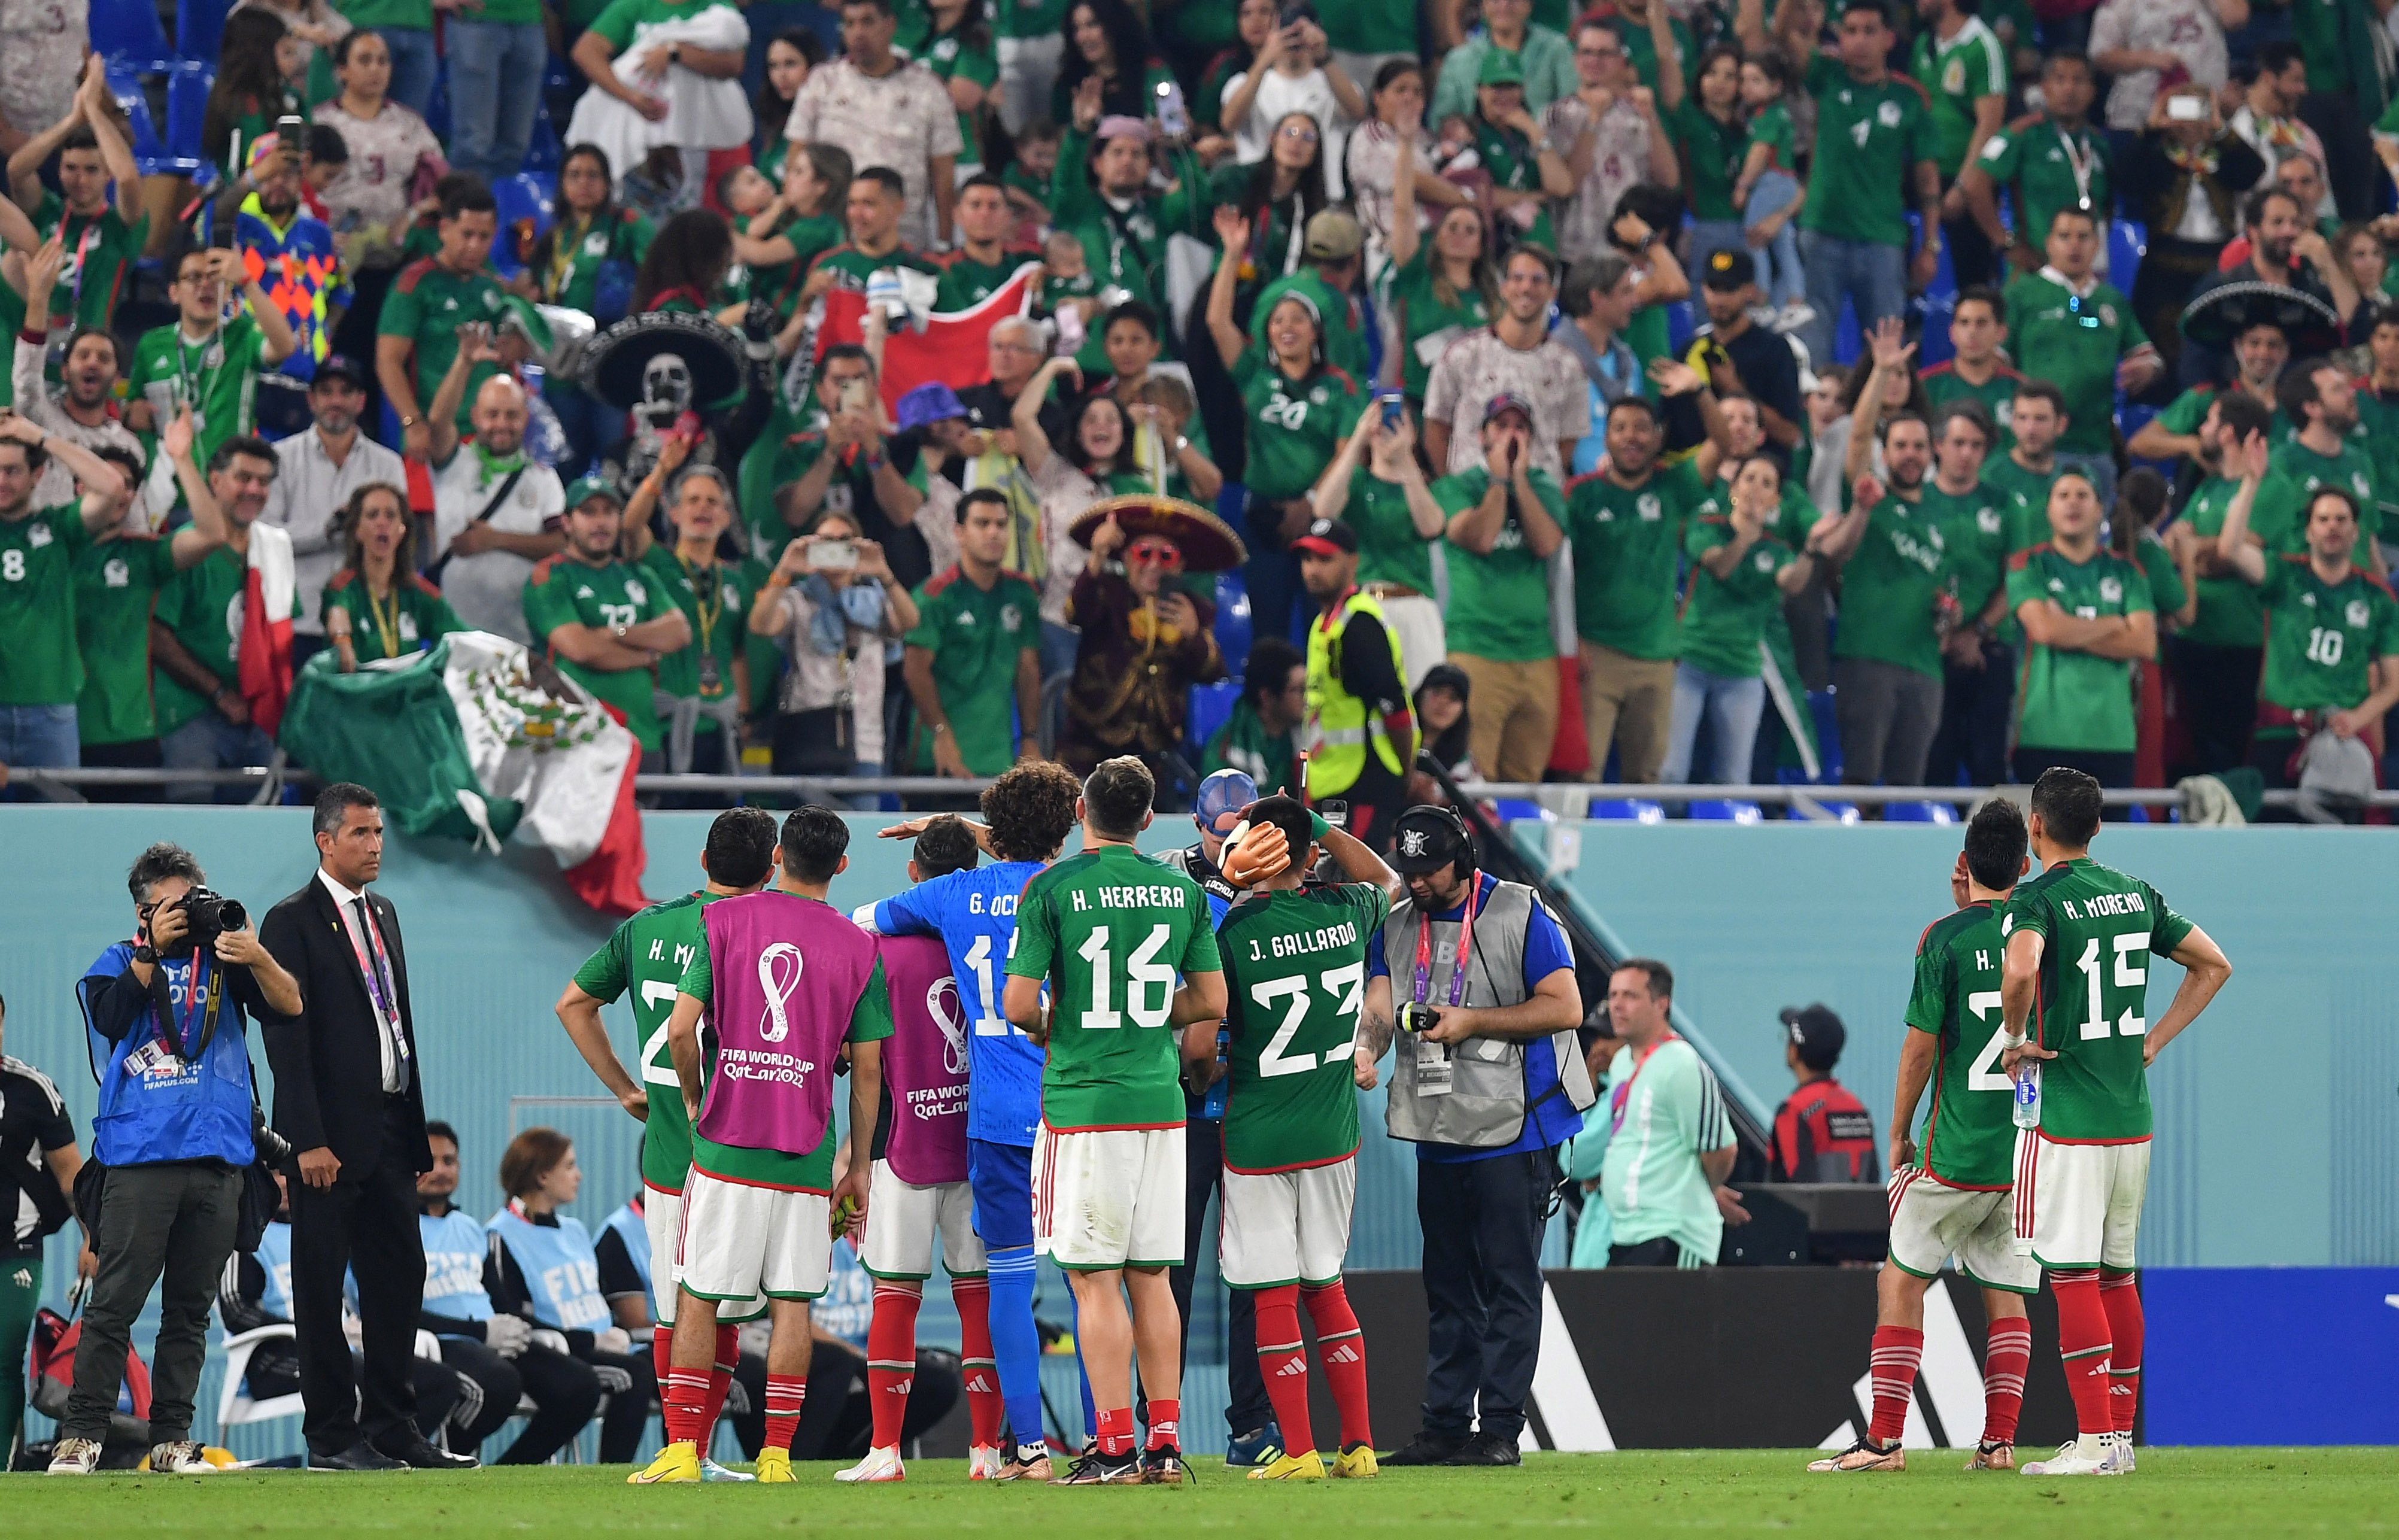 Los jugadores del Tricolor se van a agradecer a toda su afición por el apoyo en el Estadio 974. REUTERS/Jennifer Lorenzini